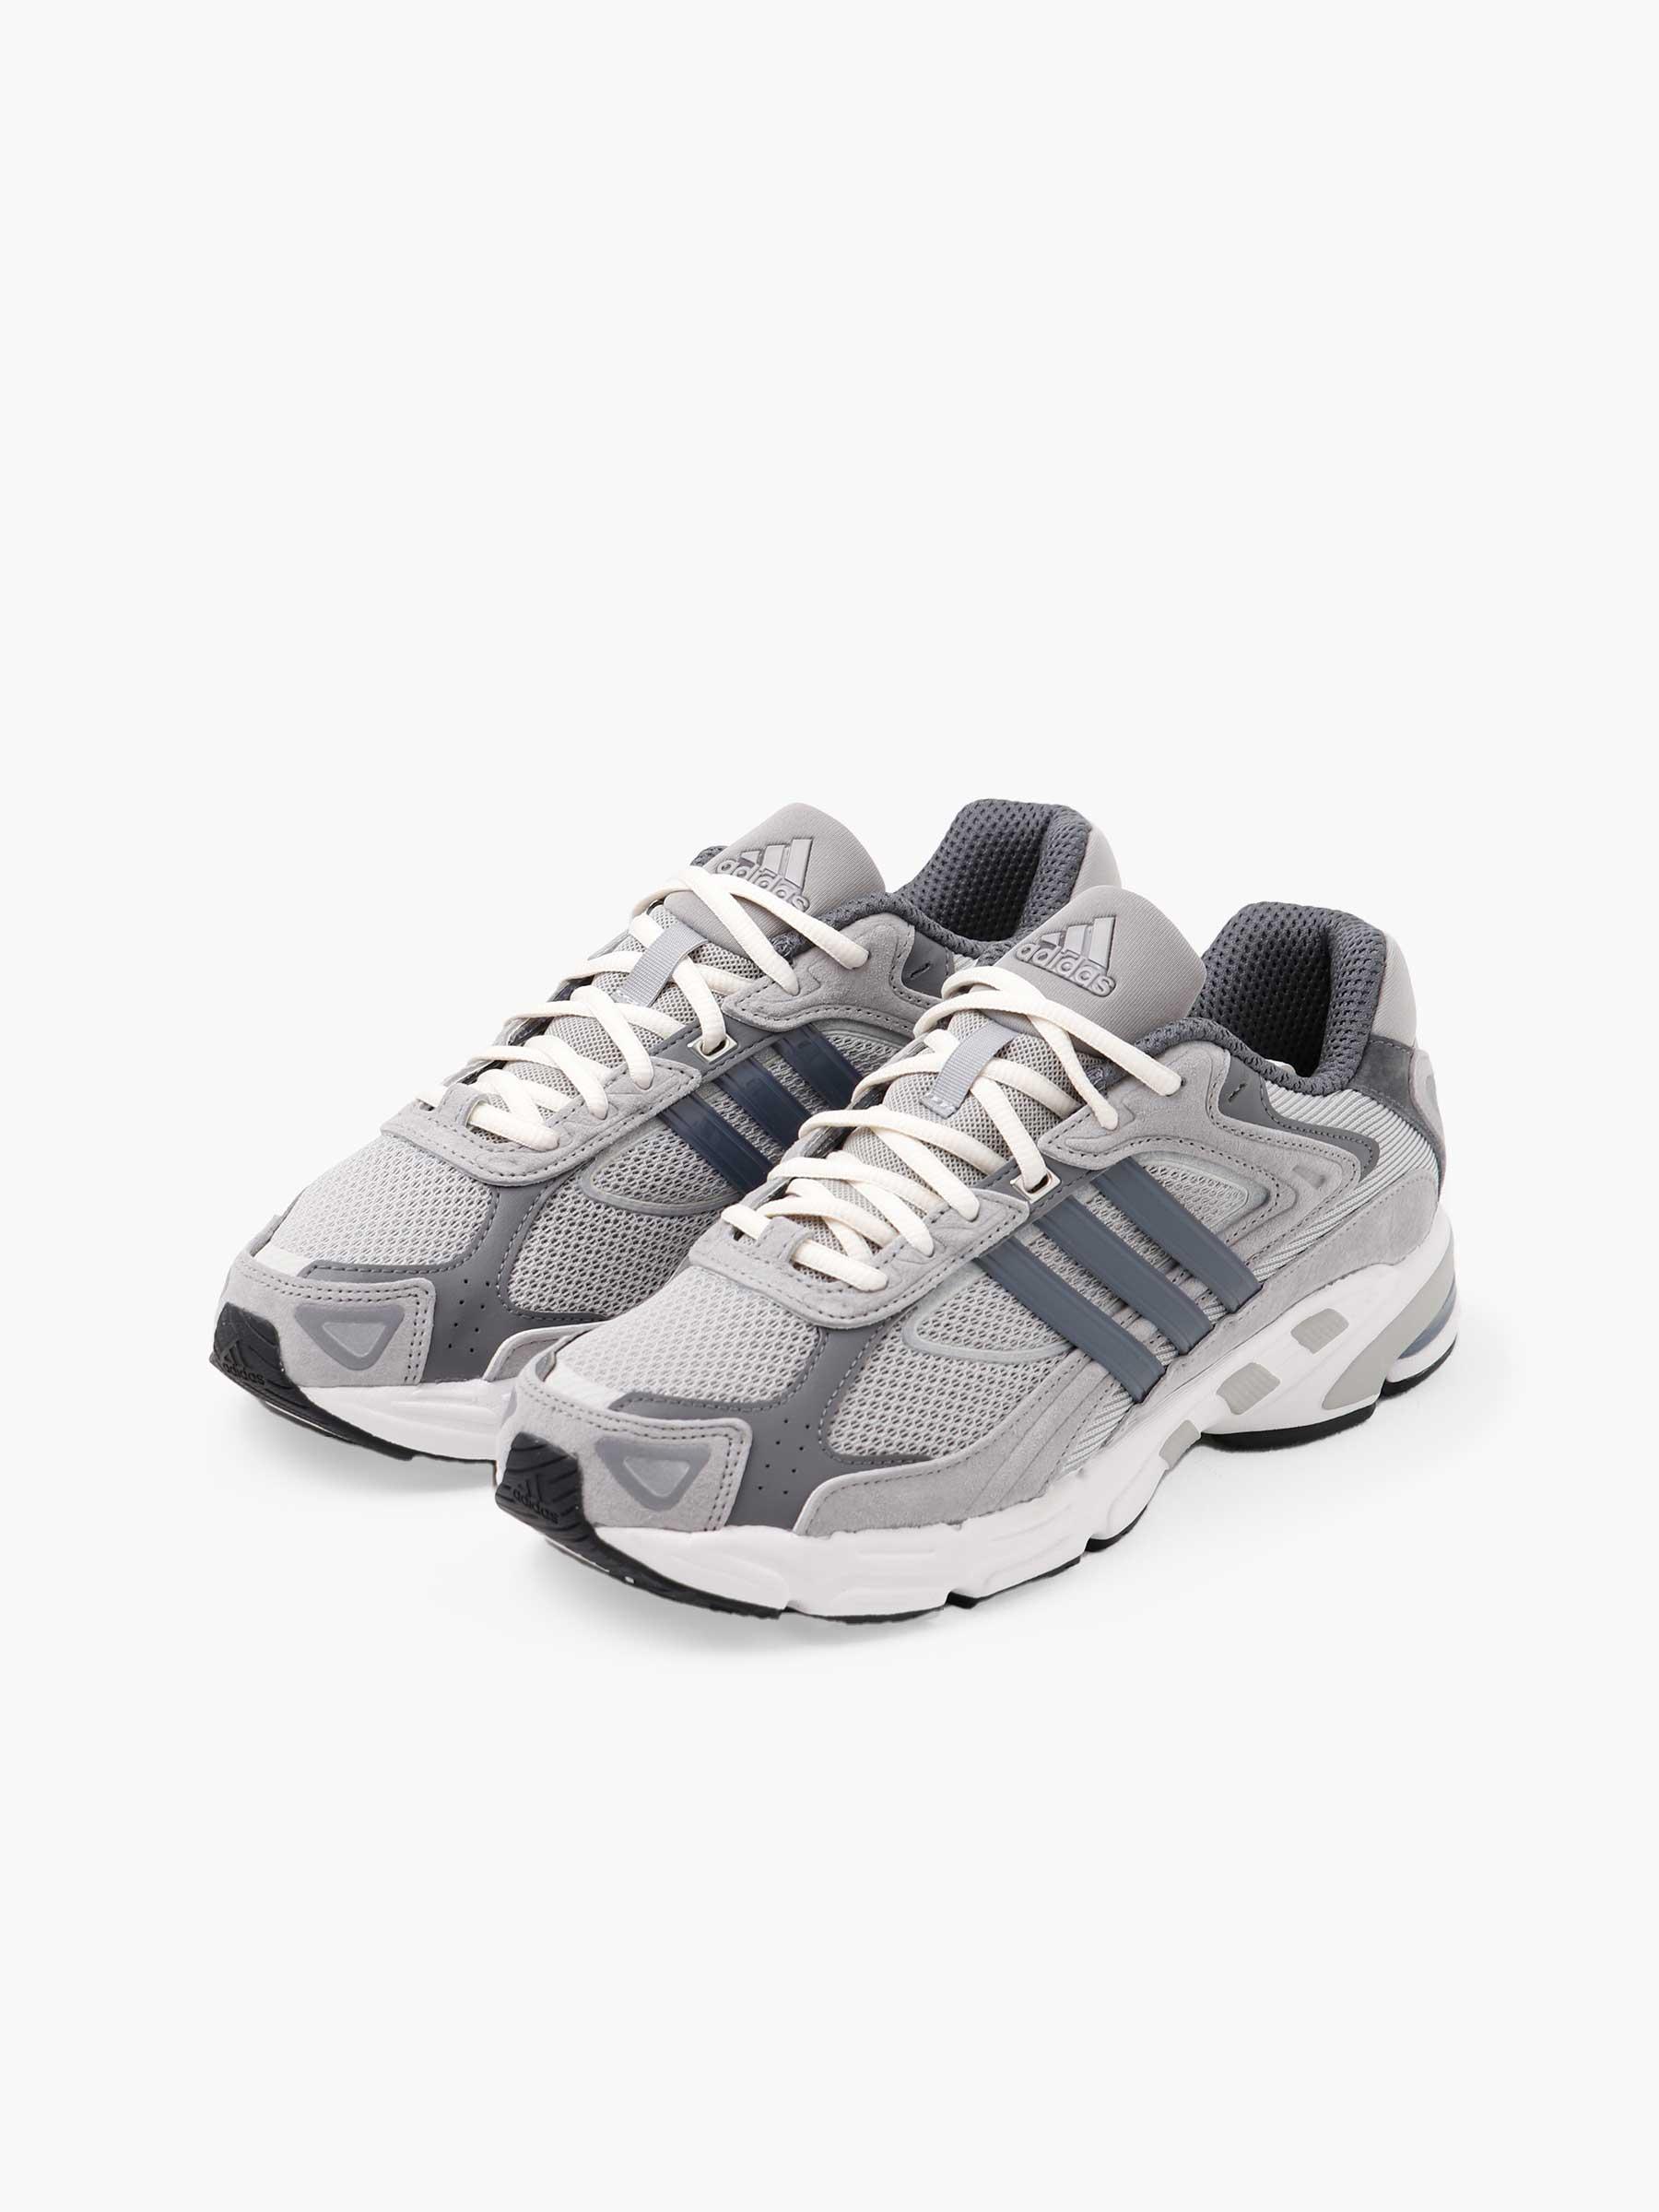 adidas Response Cl Metallic Grey Grey Four Crystal White - Freshcotton